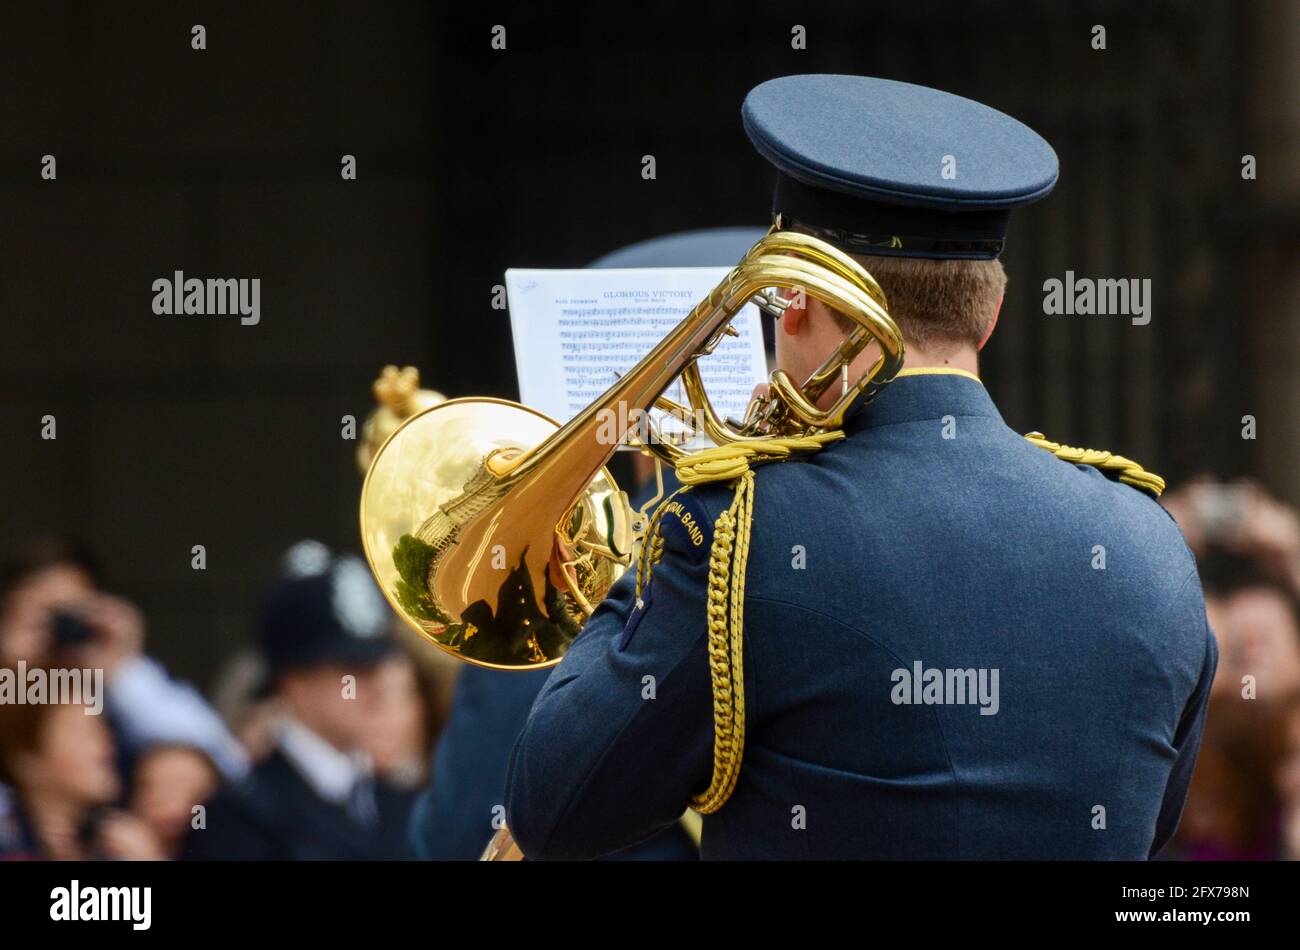 Groupe central du joueur de trombone de la Royal Air Force lors de la célébration du Queens Diamond Jubilee à Londres, Royaume-Uni. La musique de feuille de victoire glorieuse, marche rapide Banque D'Images